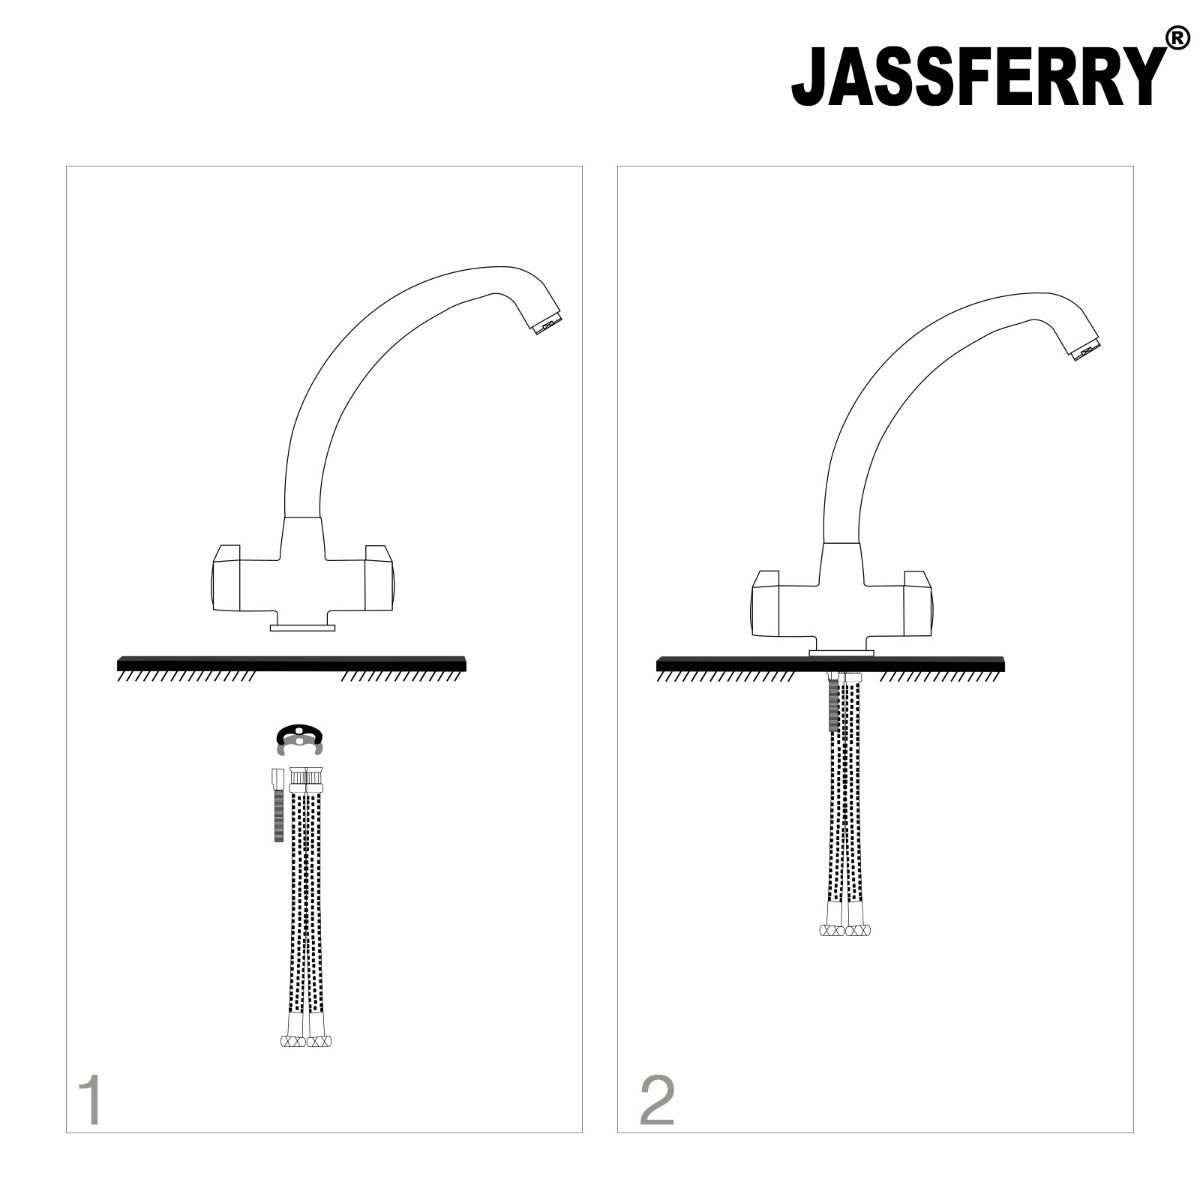 JassferryJASSFERRY New Mono Kitchen Mixer Taps Swivel Spout Dual Lever Polished ChromeTaps